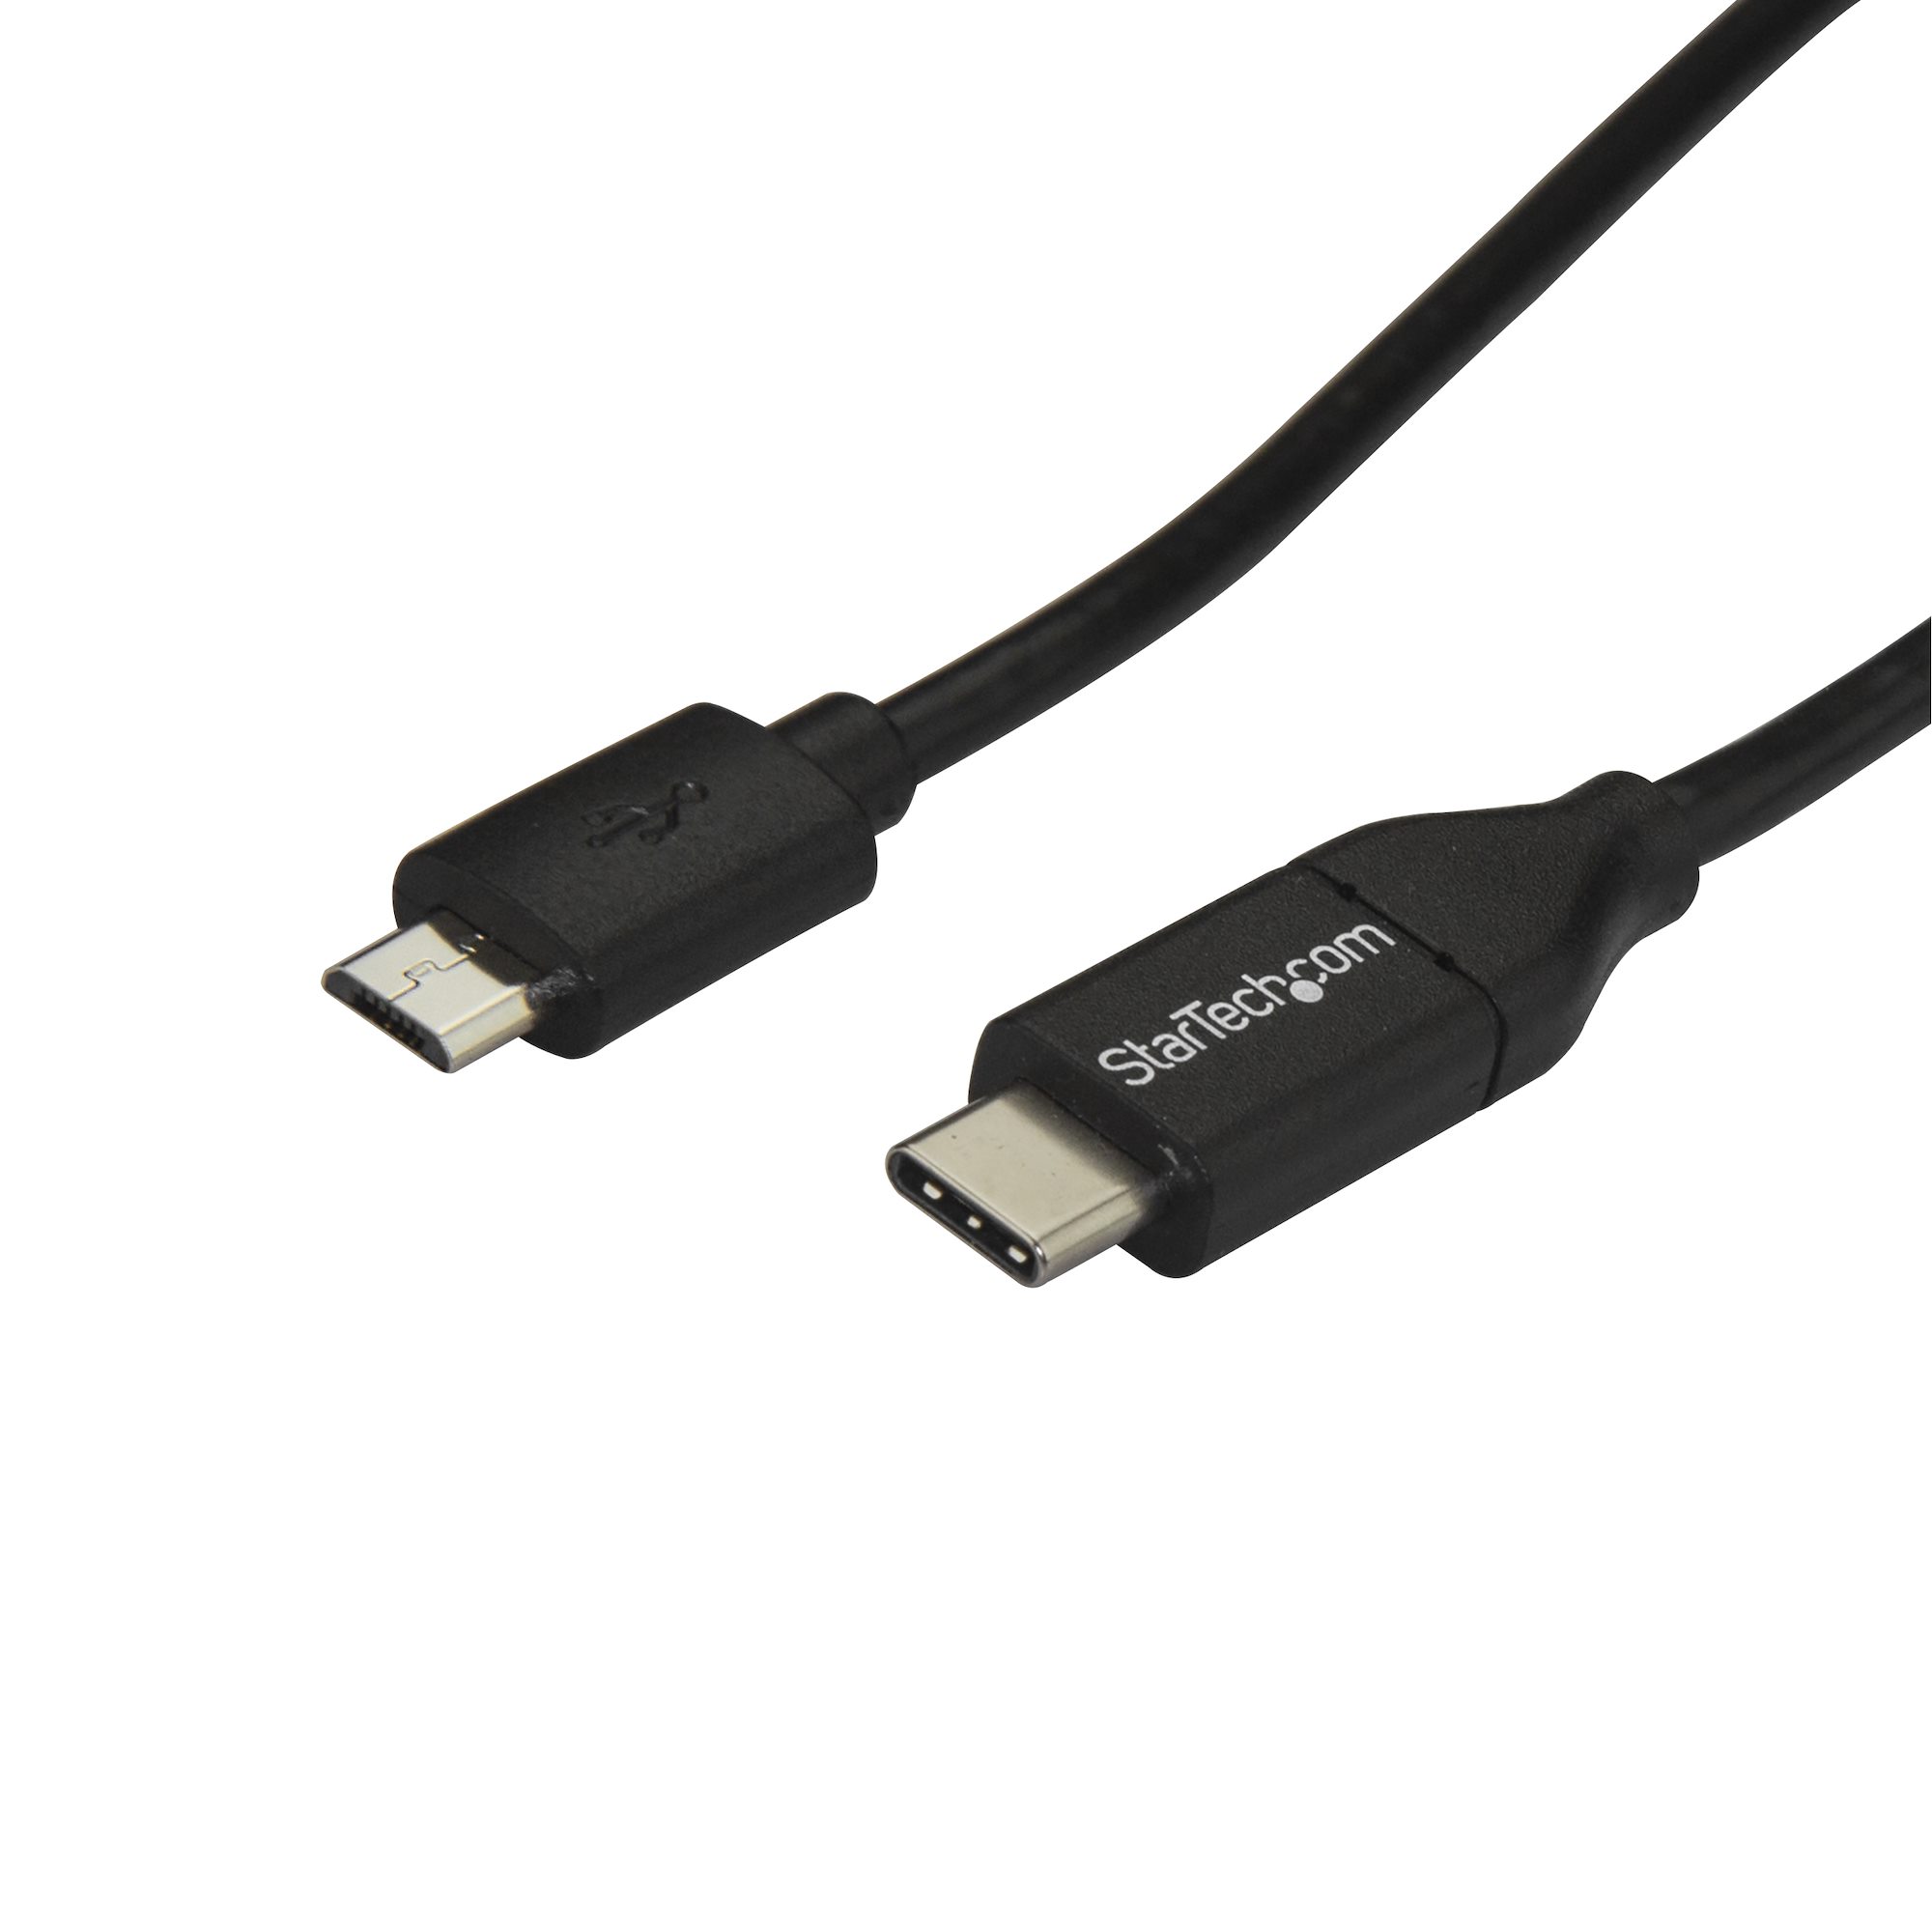 heb vertrouwen motor Groot USB 2.0 USB-C naar Micro B kabel 1m - USB-C kabels | StarTech.com Nederland